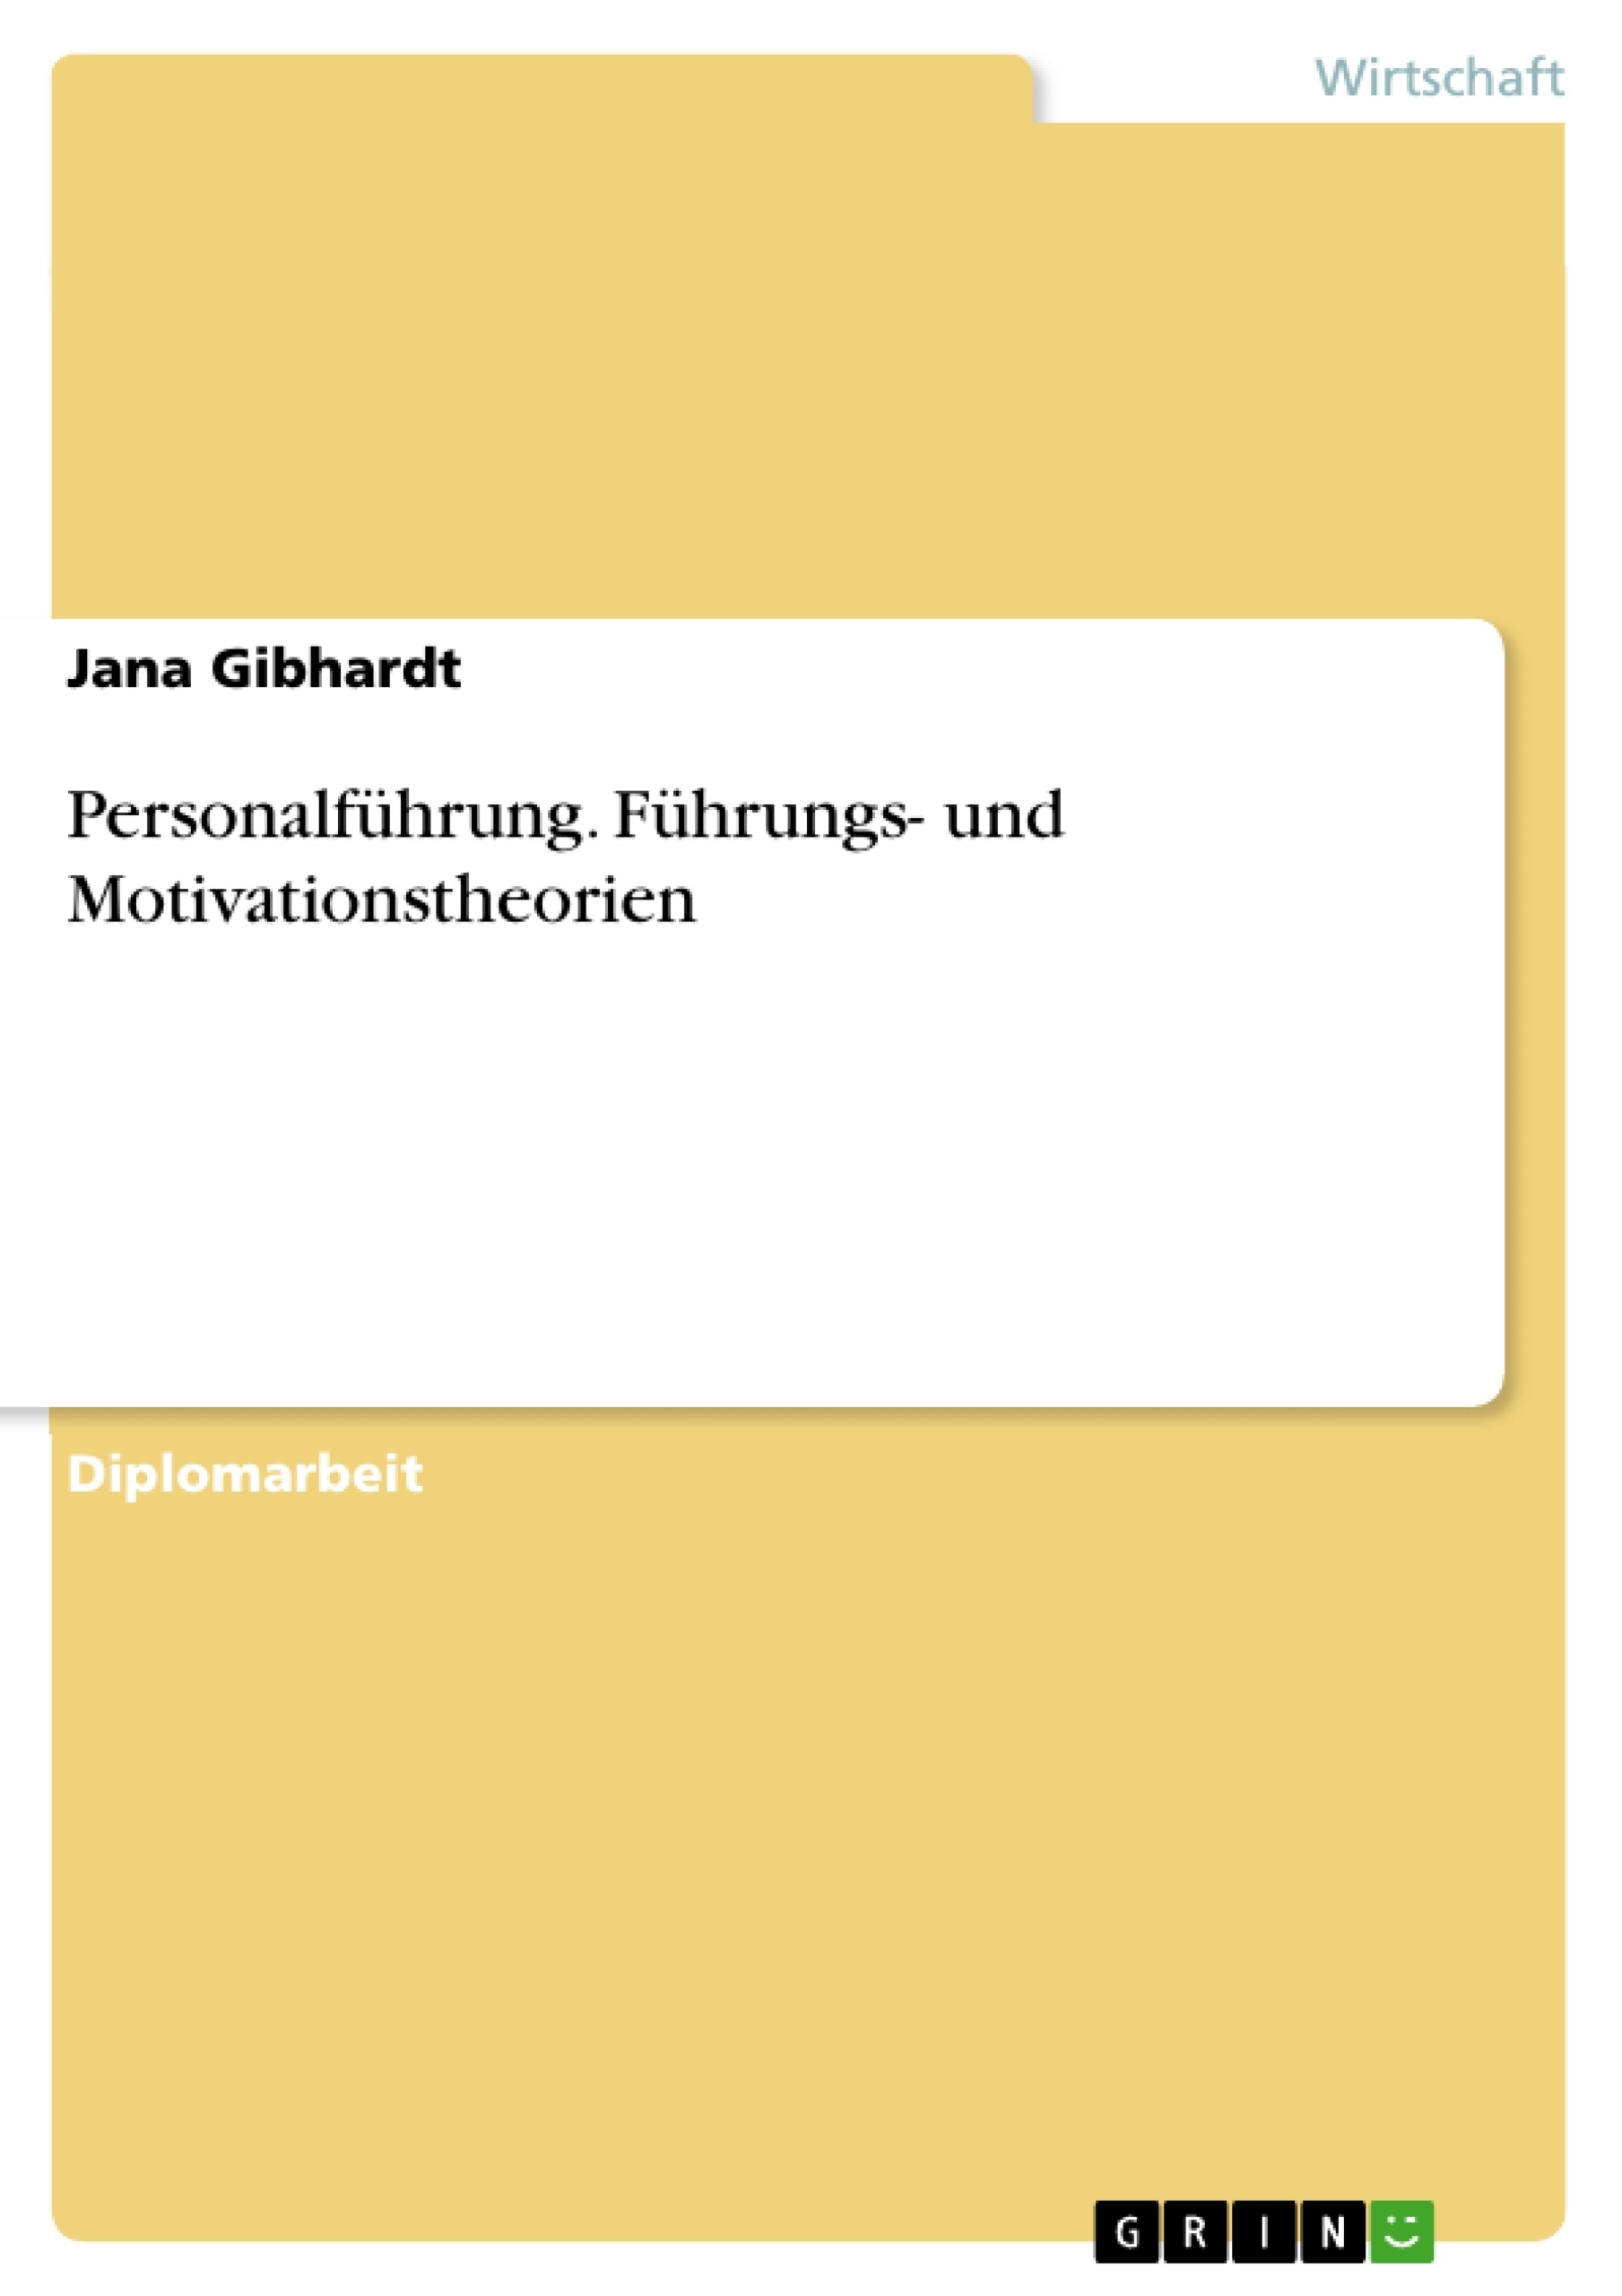 Title: Personalführung. Führungs- und Motivationstheorien